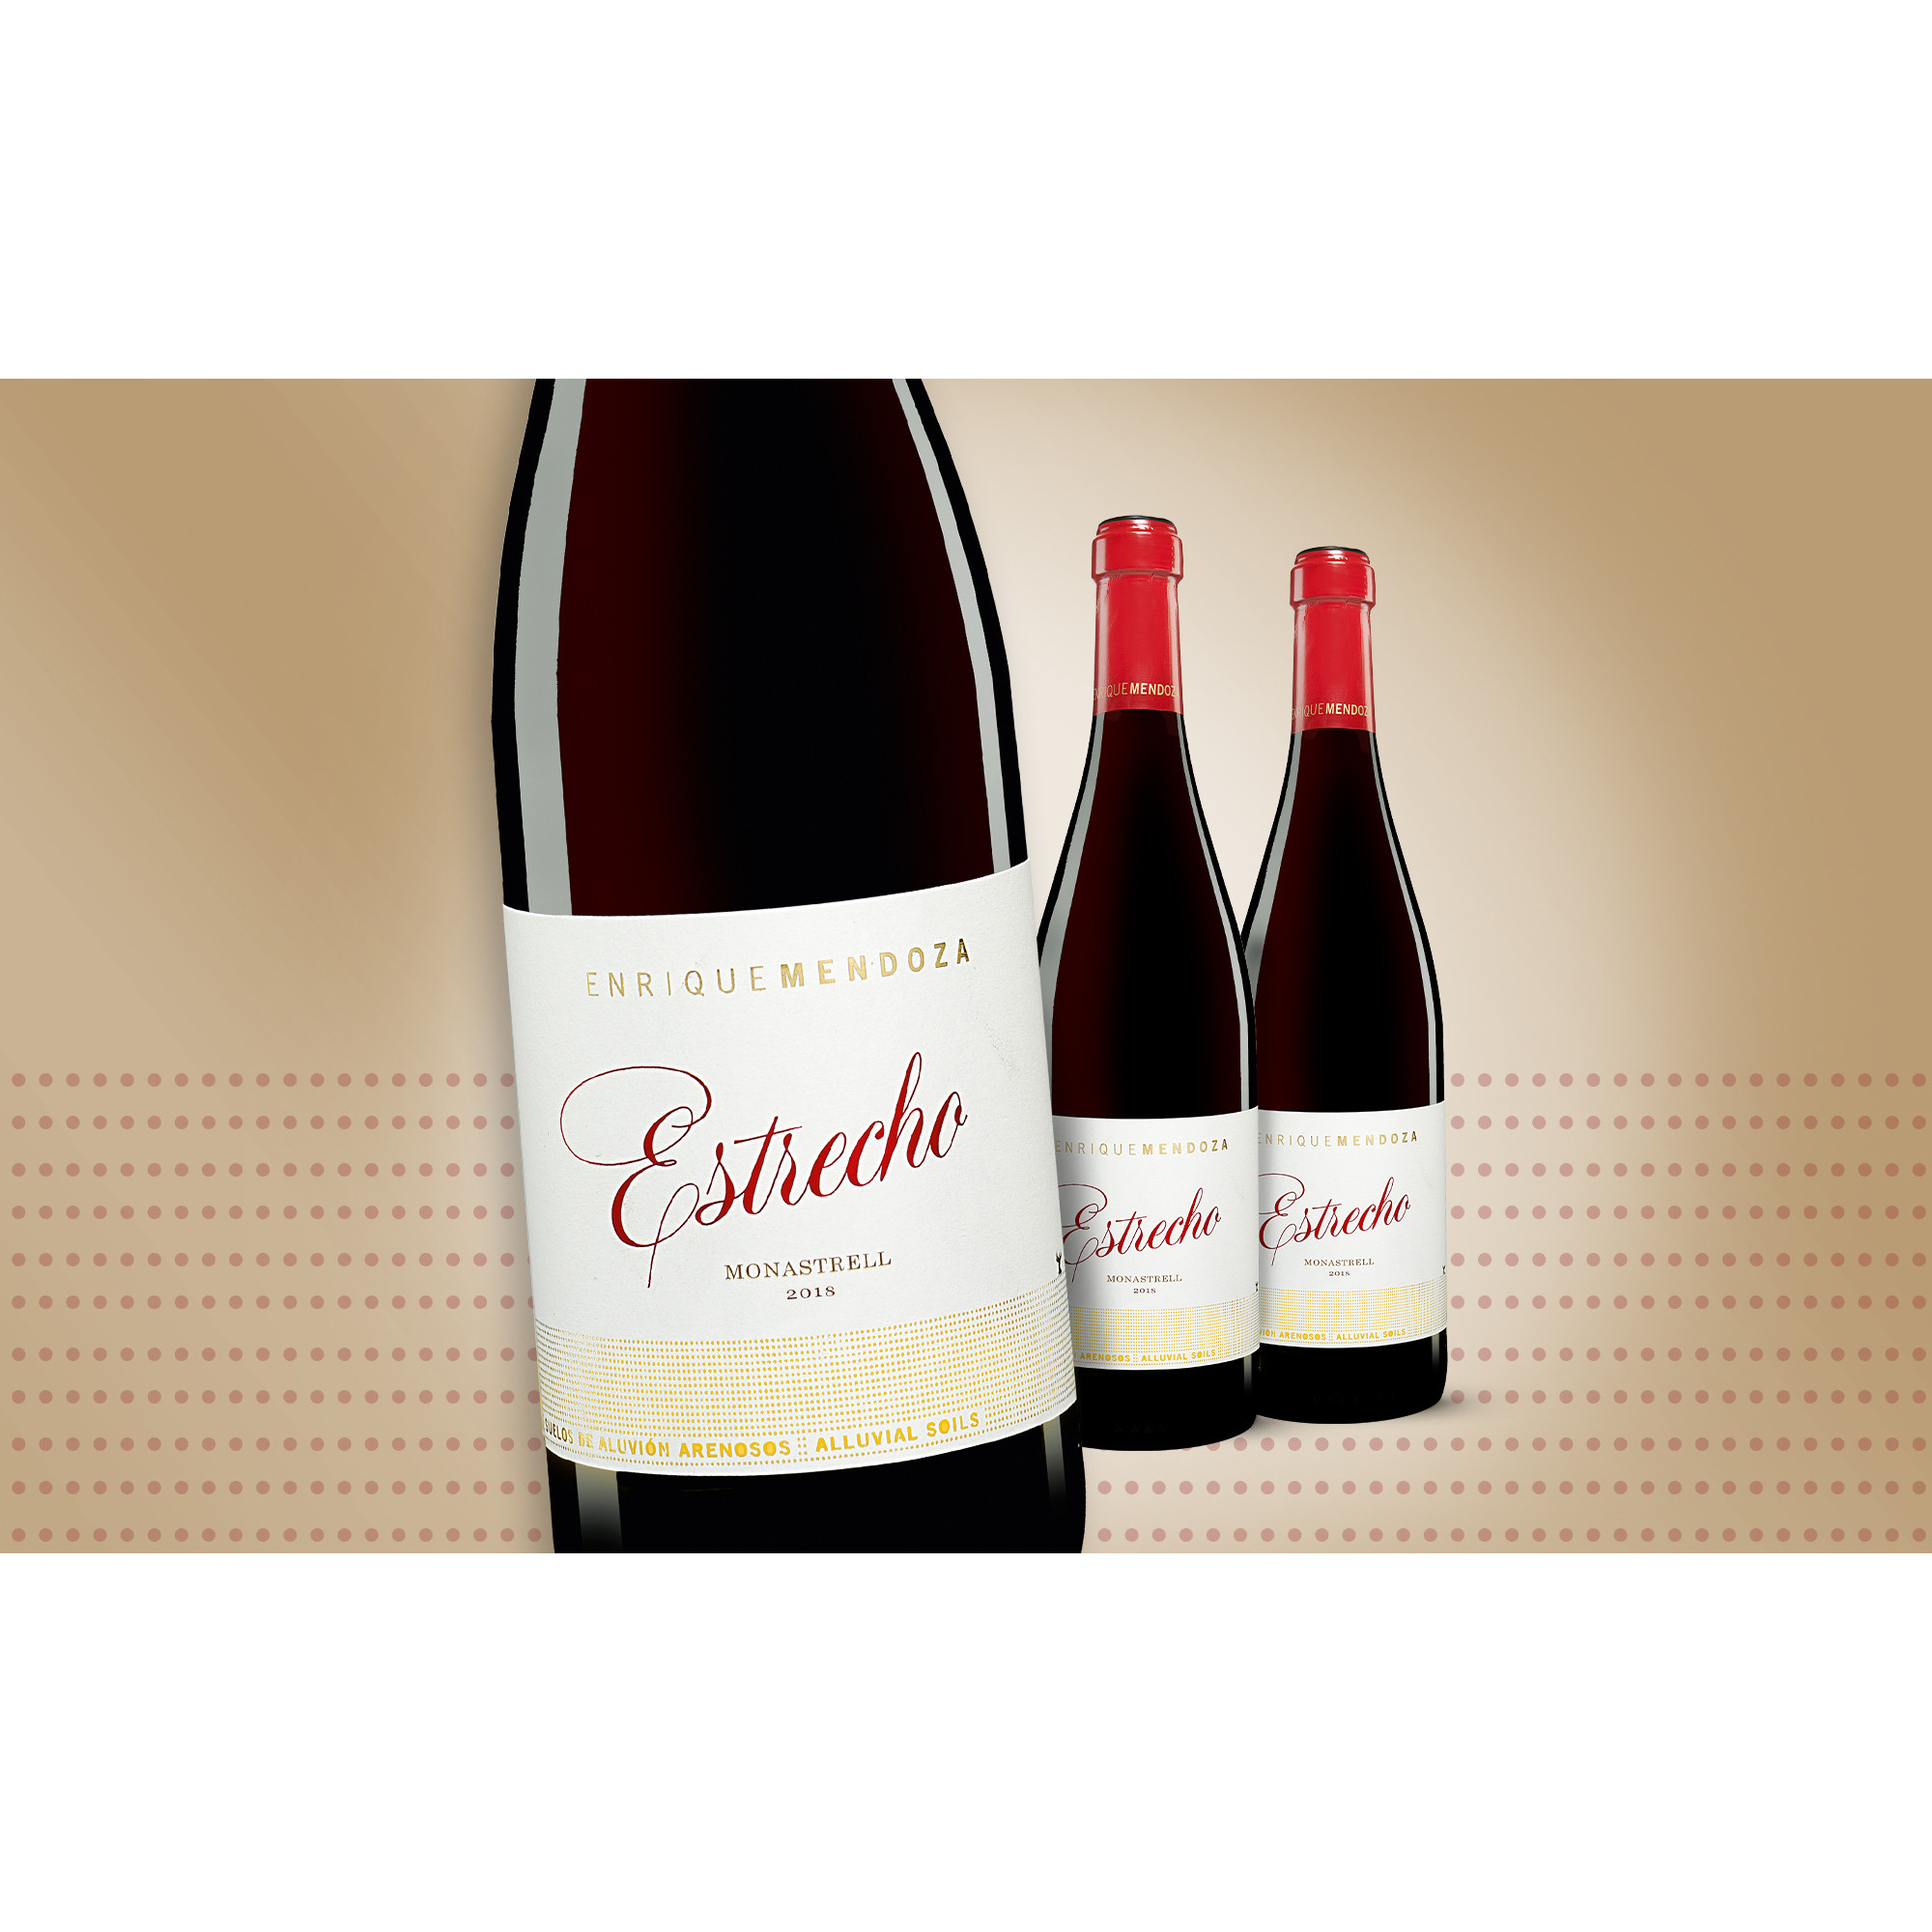 Enrique Mendoza »Estrecho« Monastrell 2018  2.25L 14.5% Vol. Trocken Weinpaket aus Spanien 33177 vinos DE